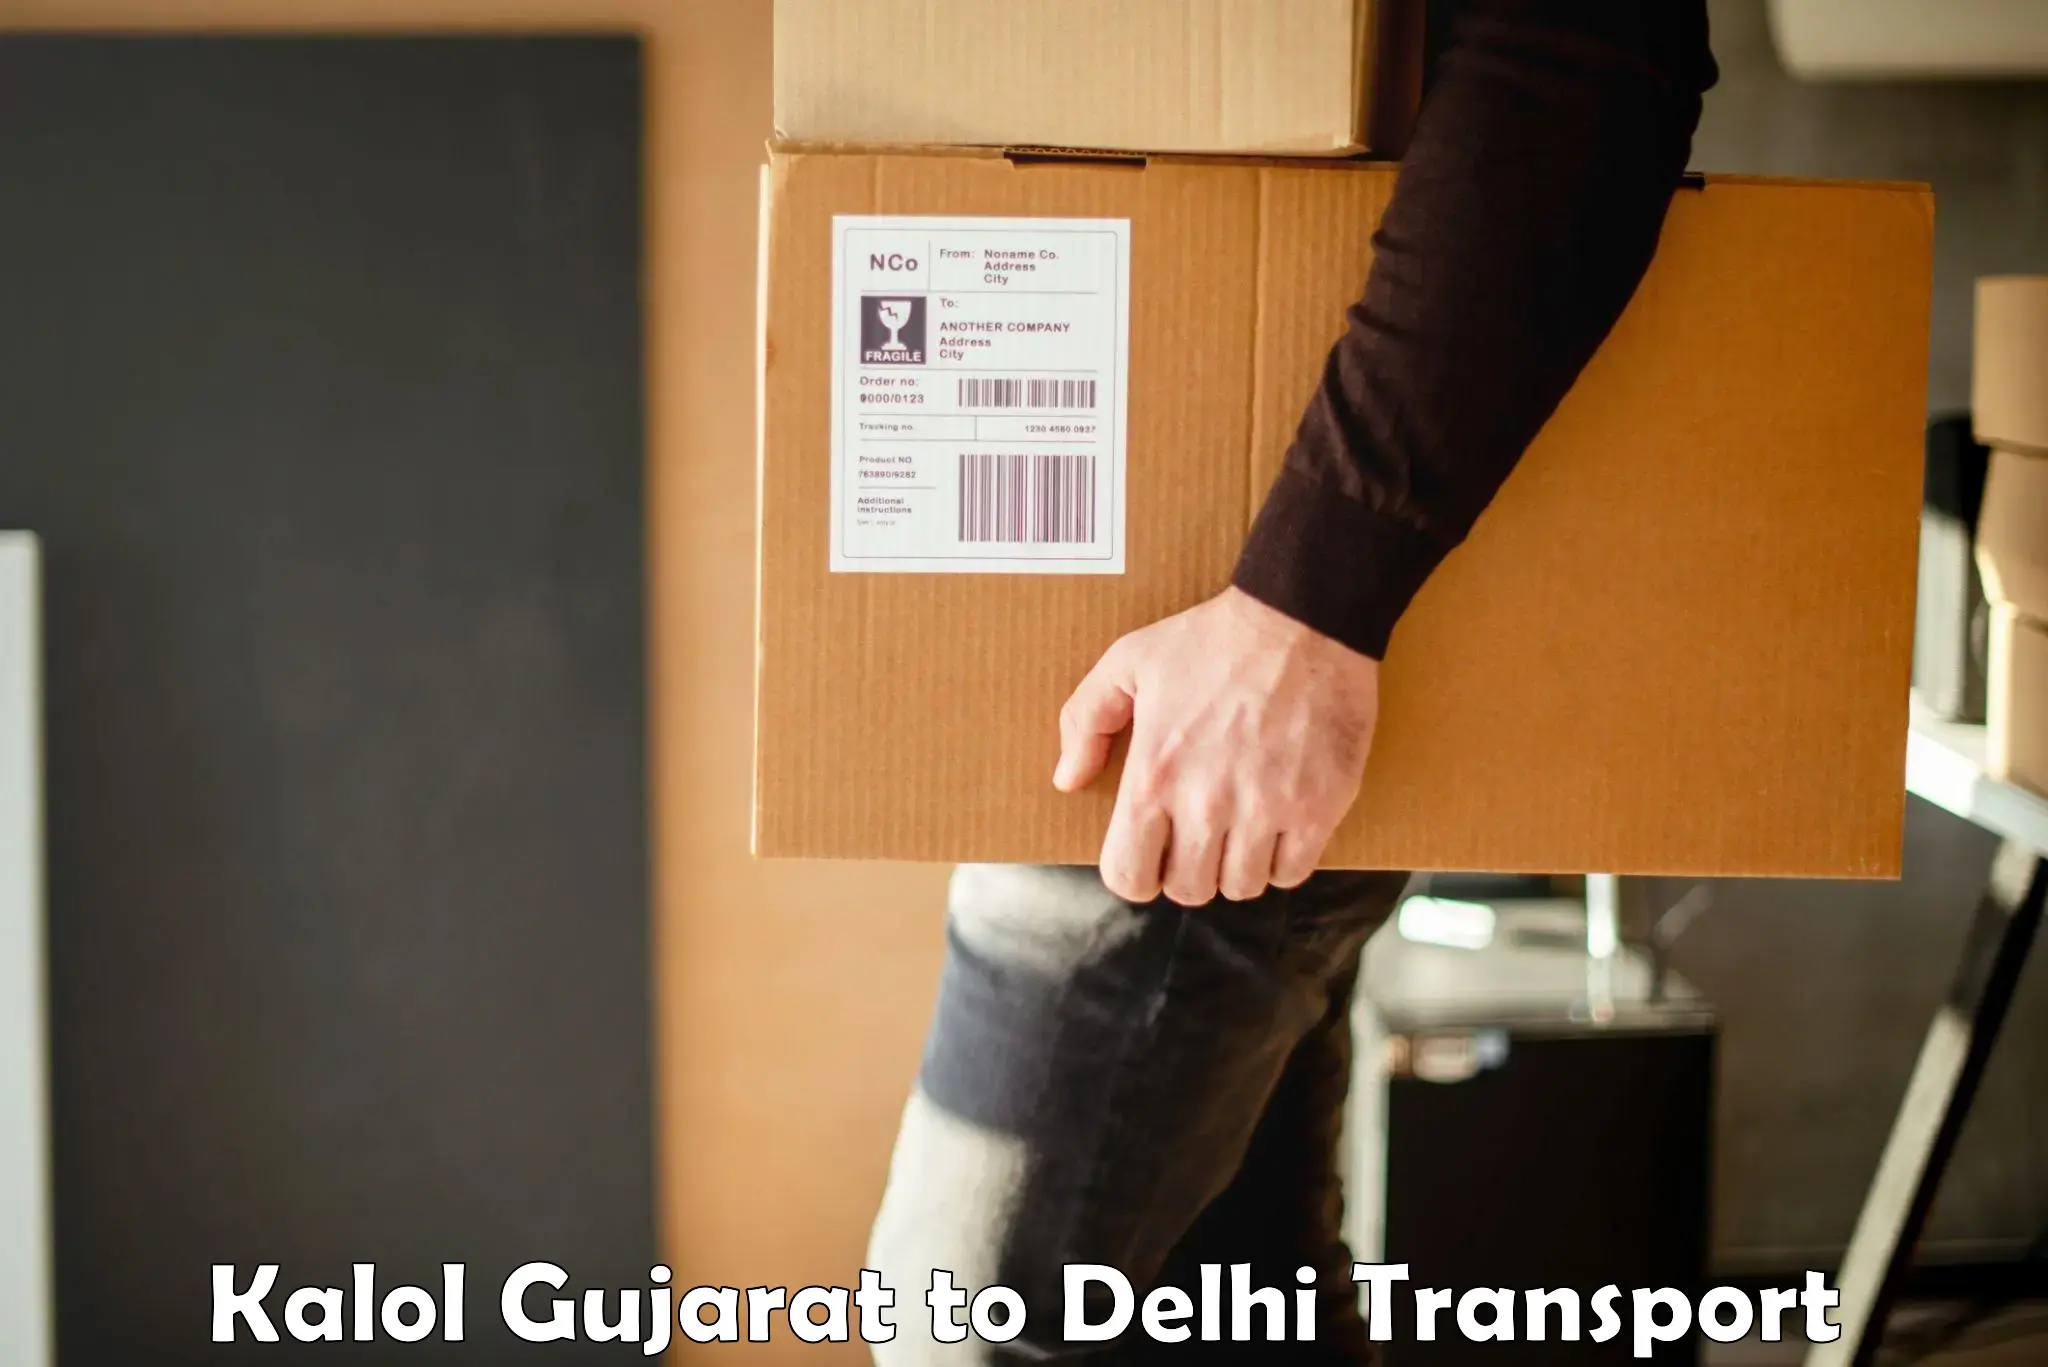 Container transportation services Kalol Gujarat to Jamia Millia Islamia New Delhi